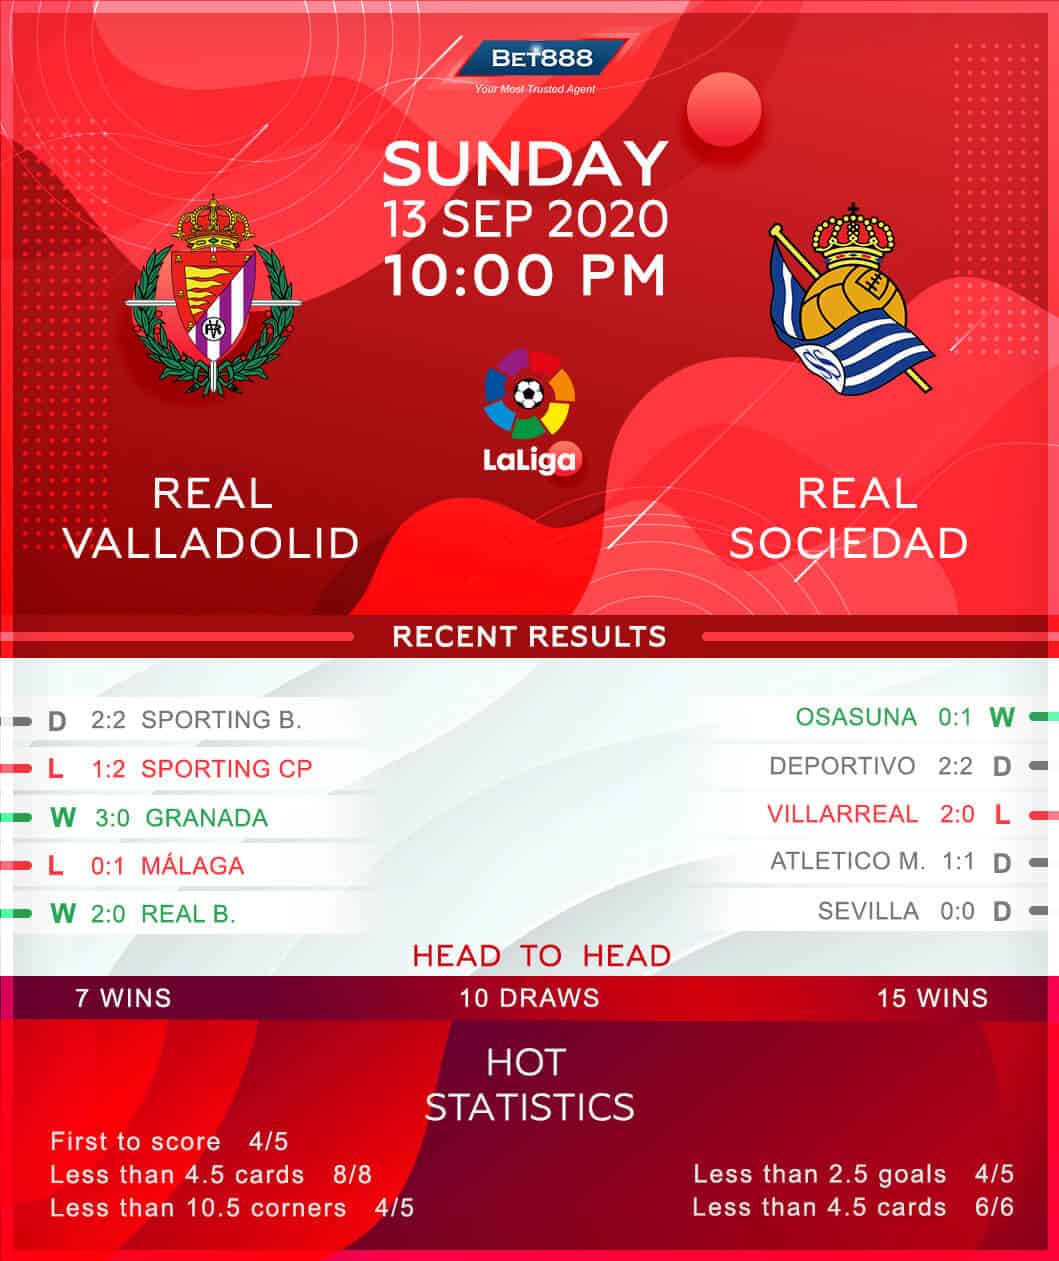 Real Valladolid vs Real Sociedad 13/09/20